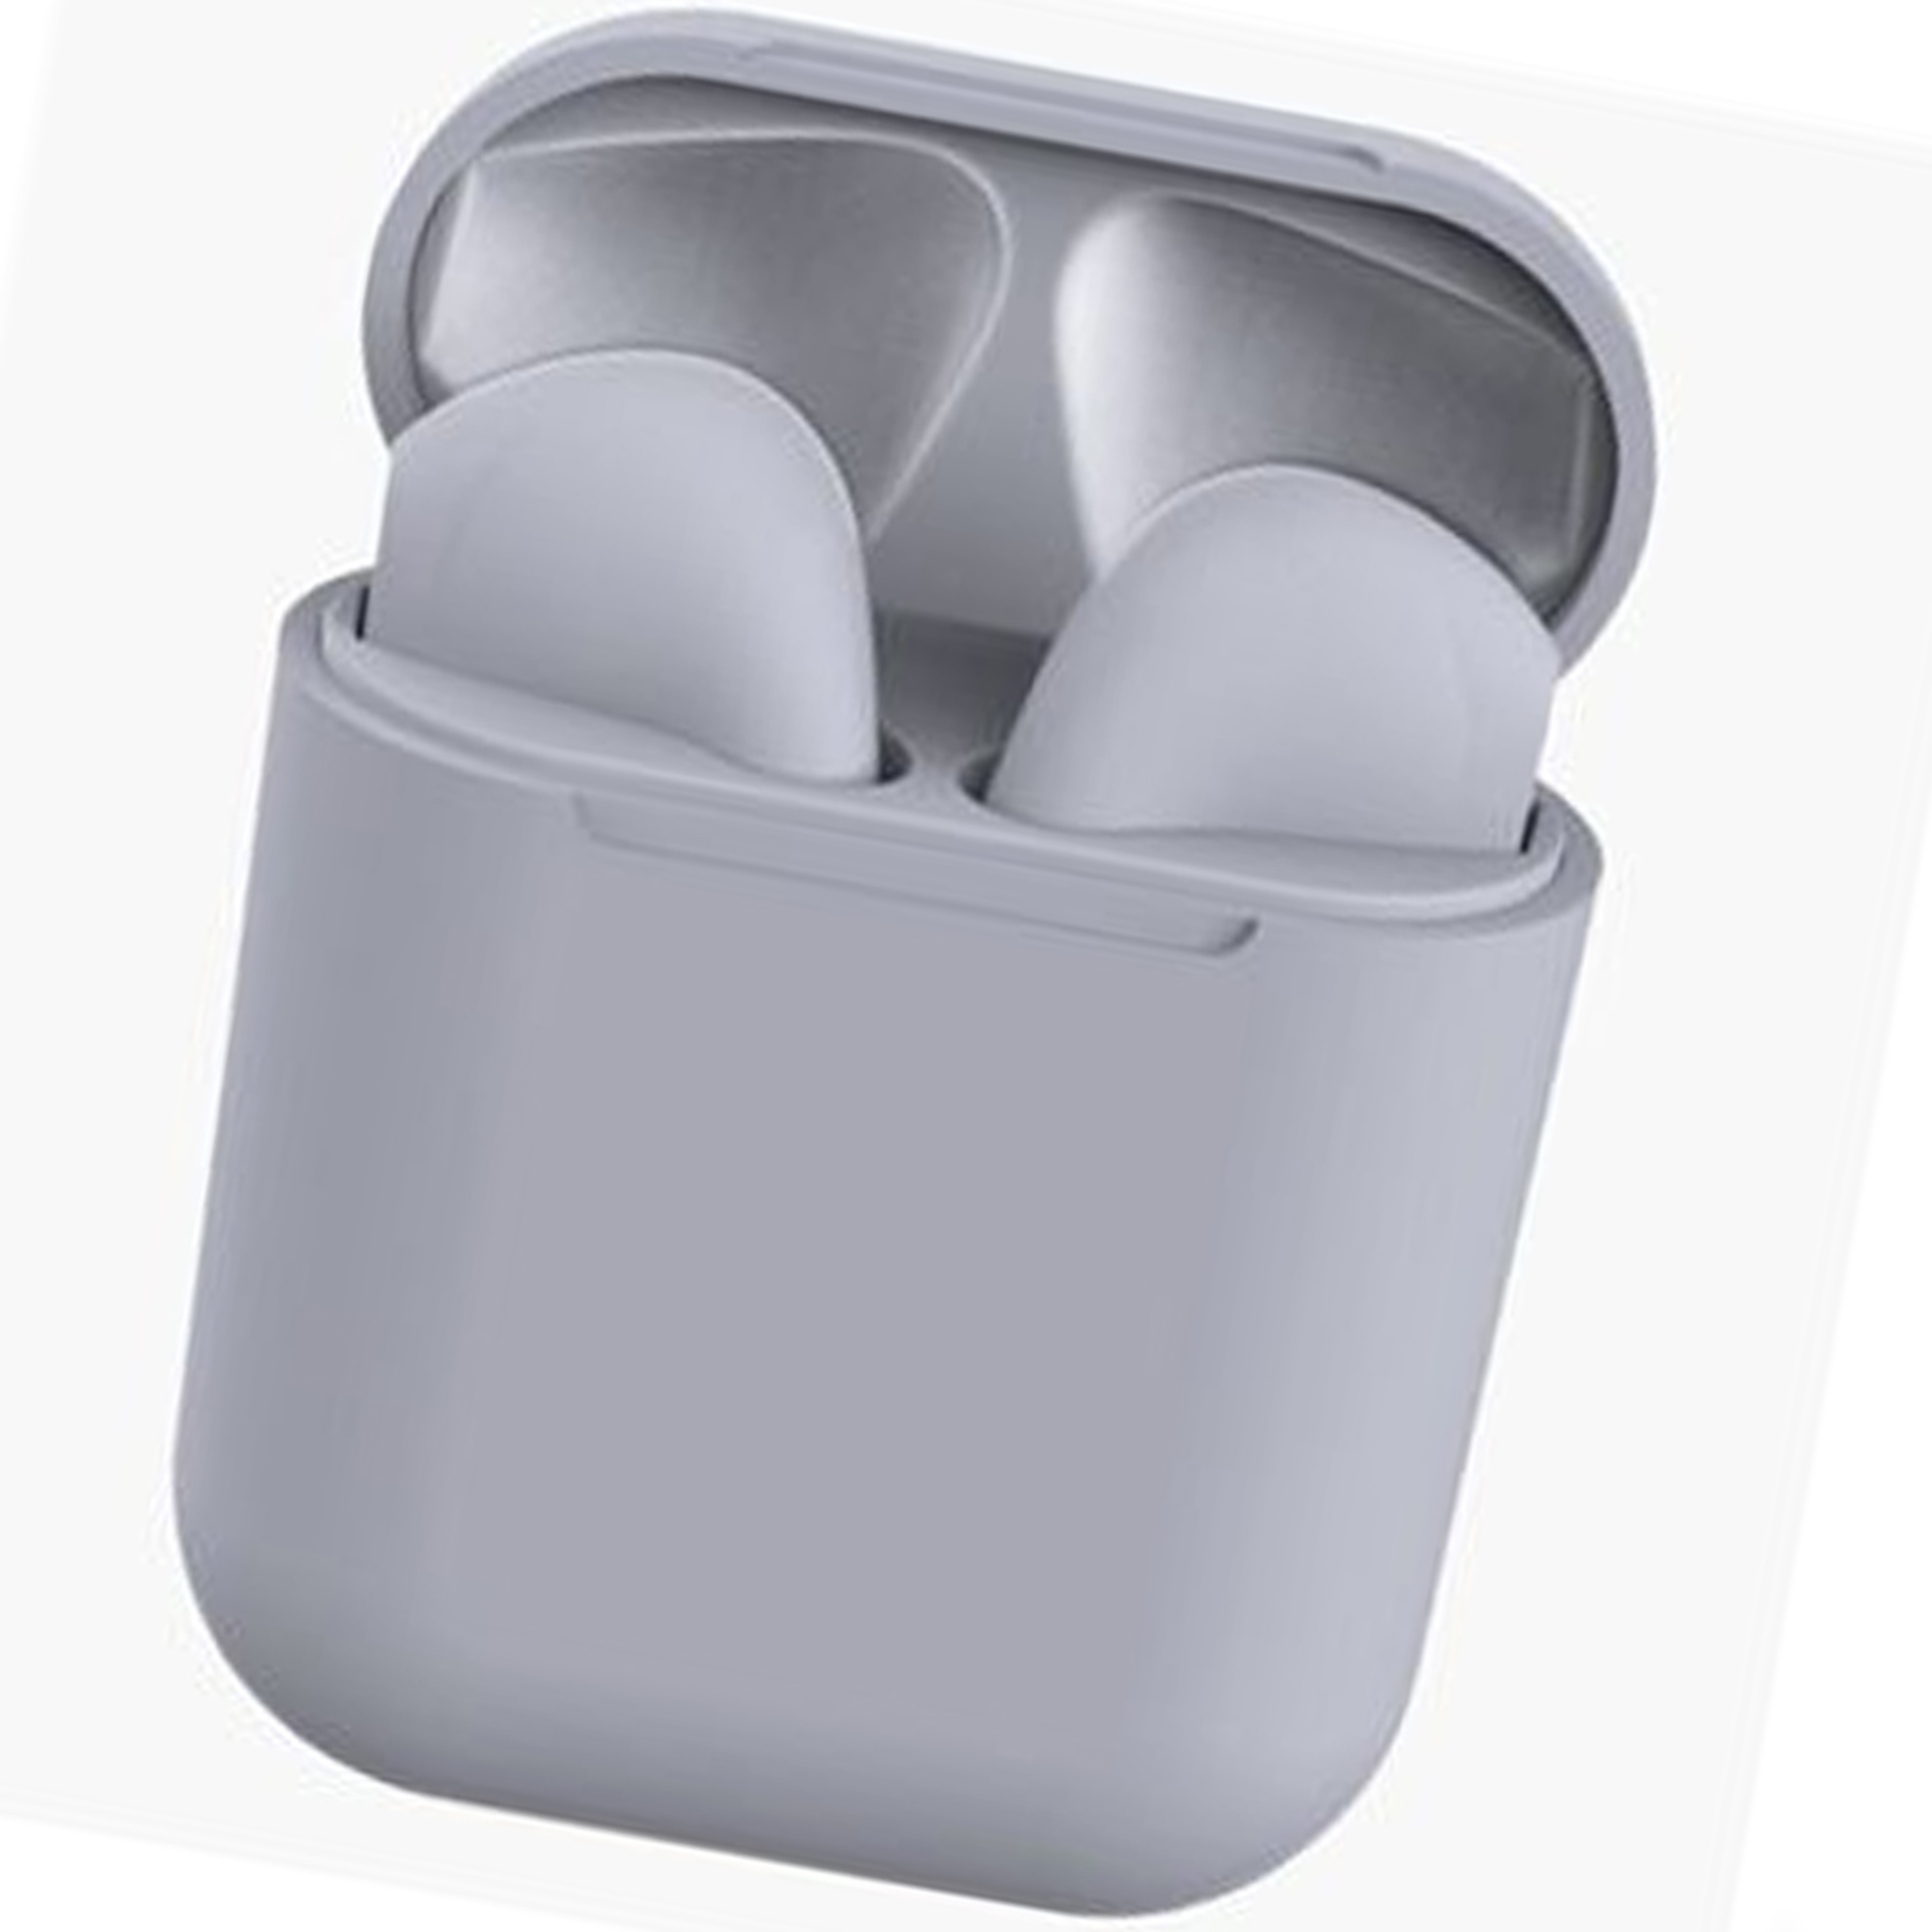 Auriculares Bluetooth Caja De Carga Inpods - gris - 